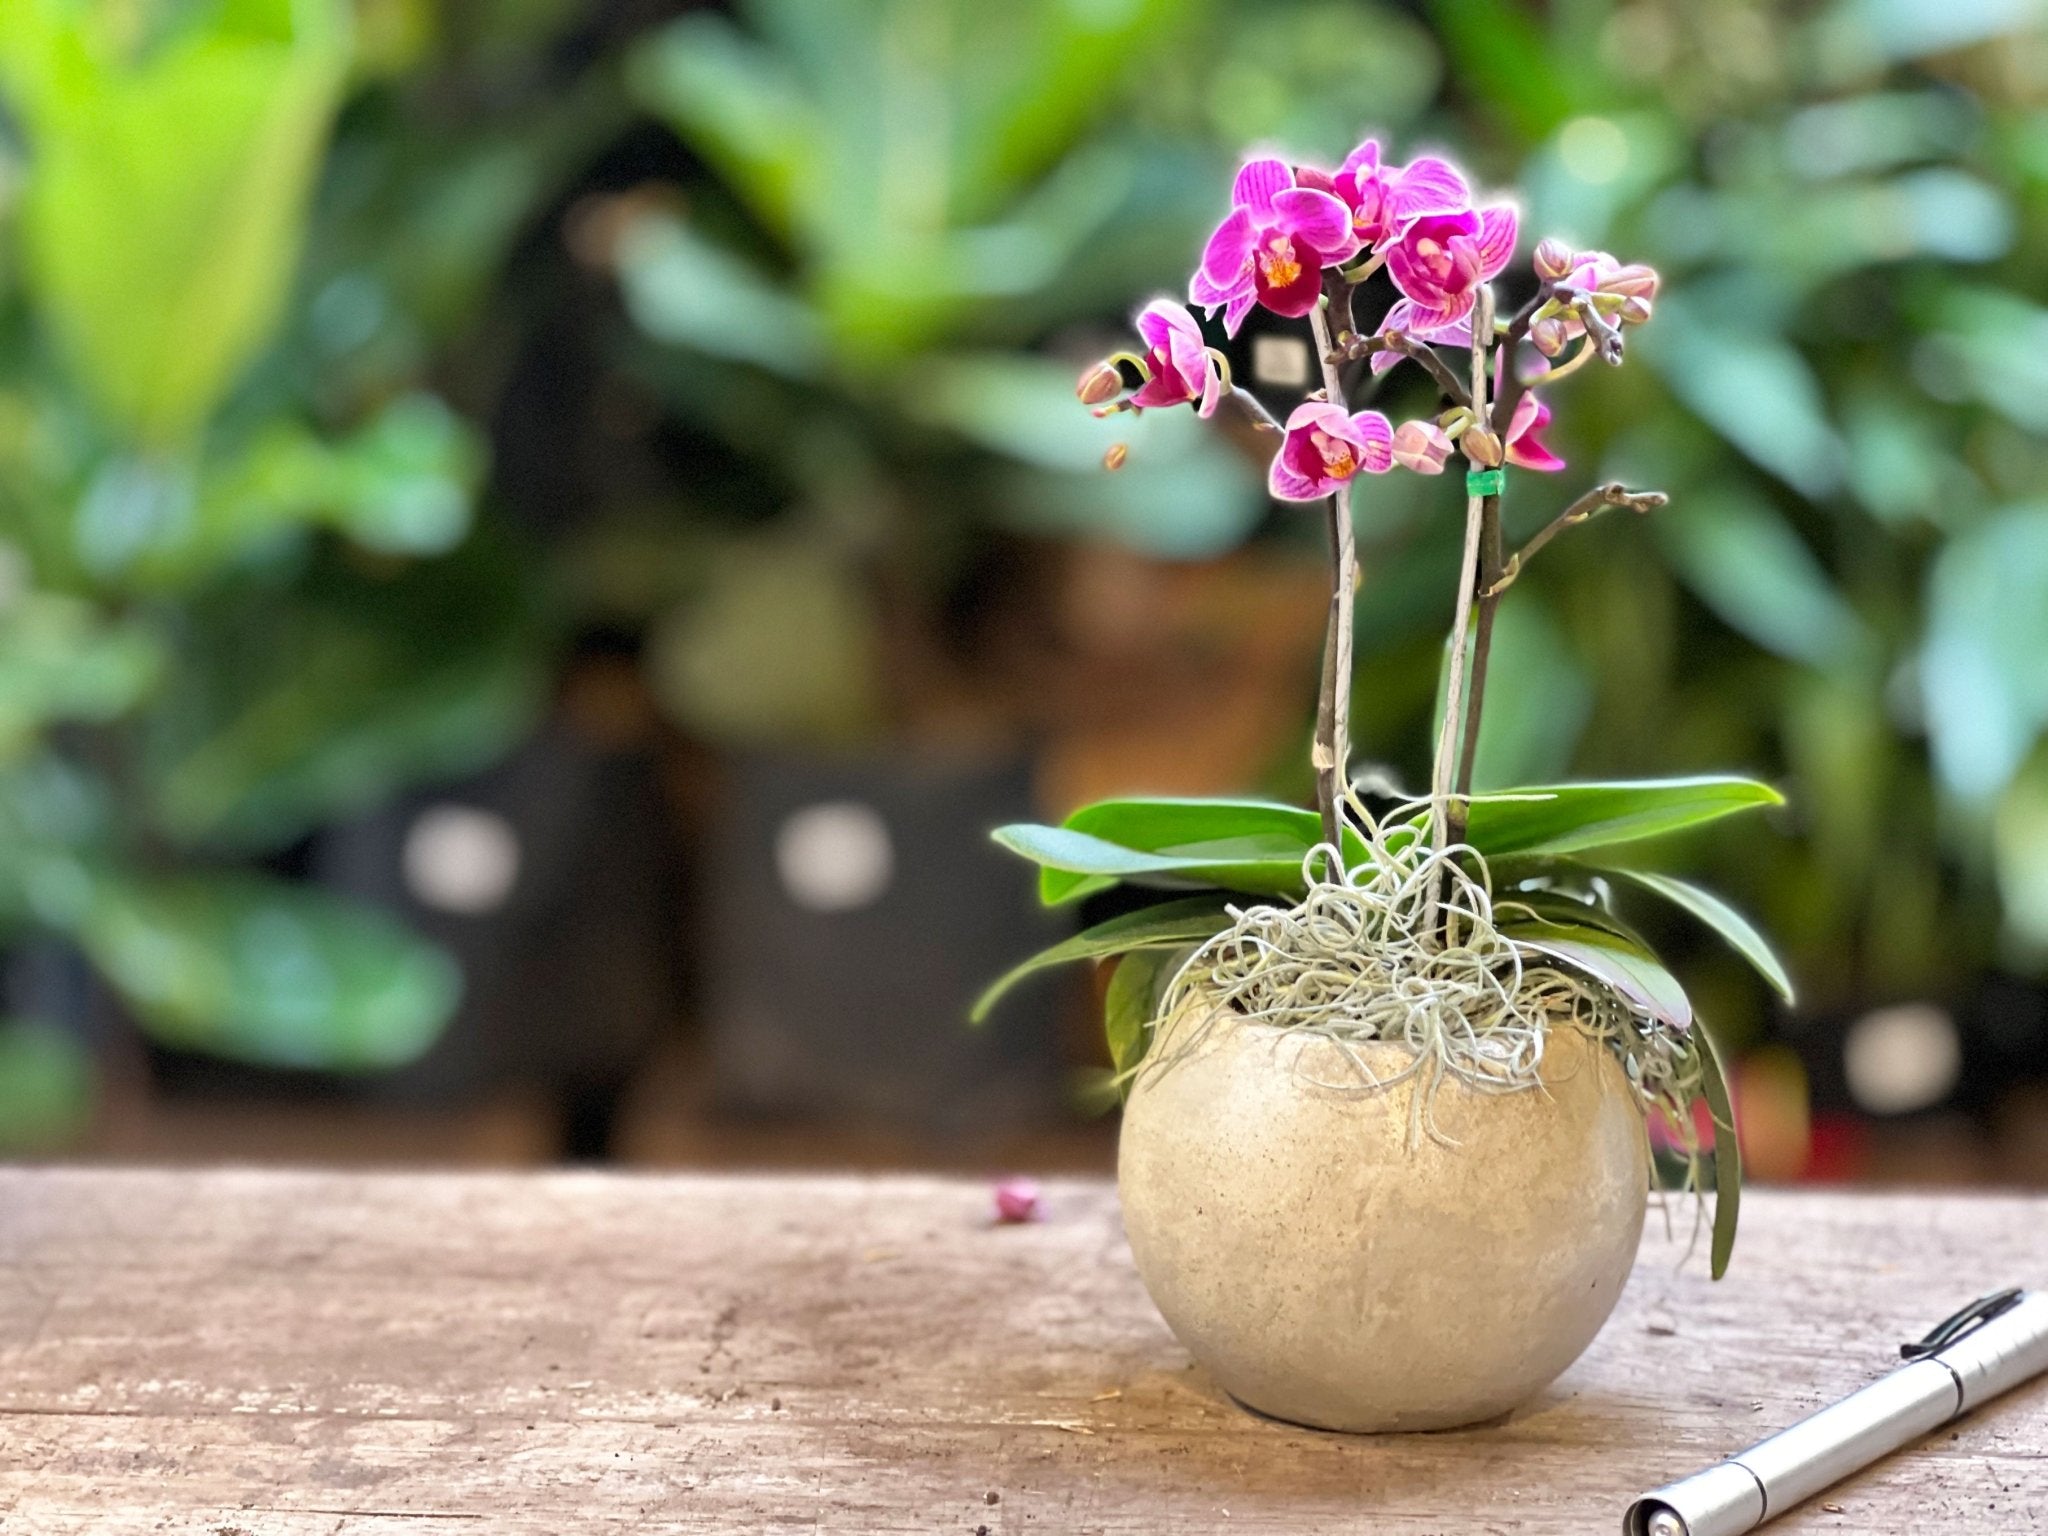 Orquídea Phalaenopsis Mini